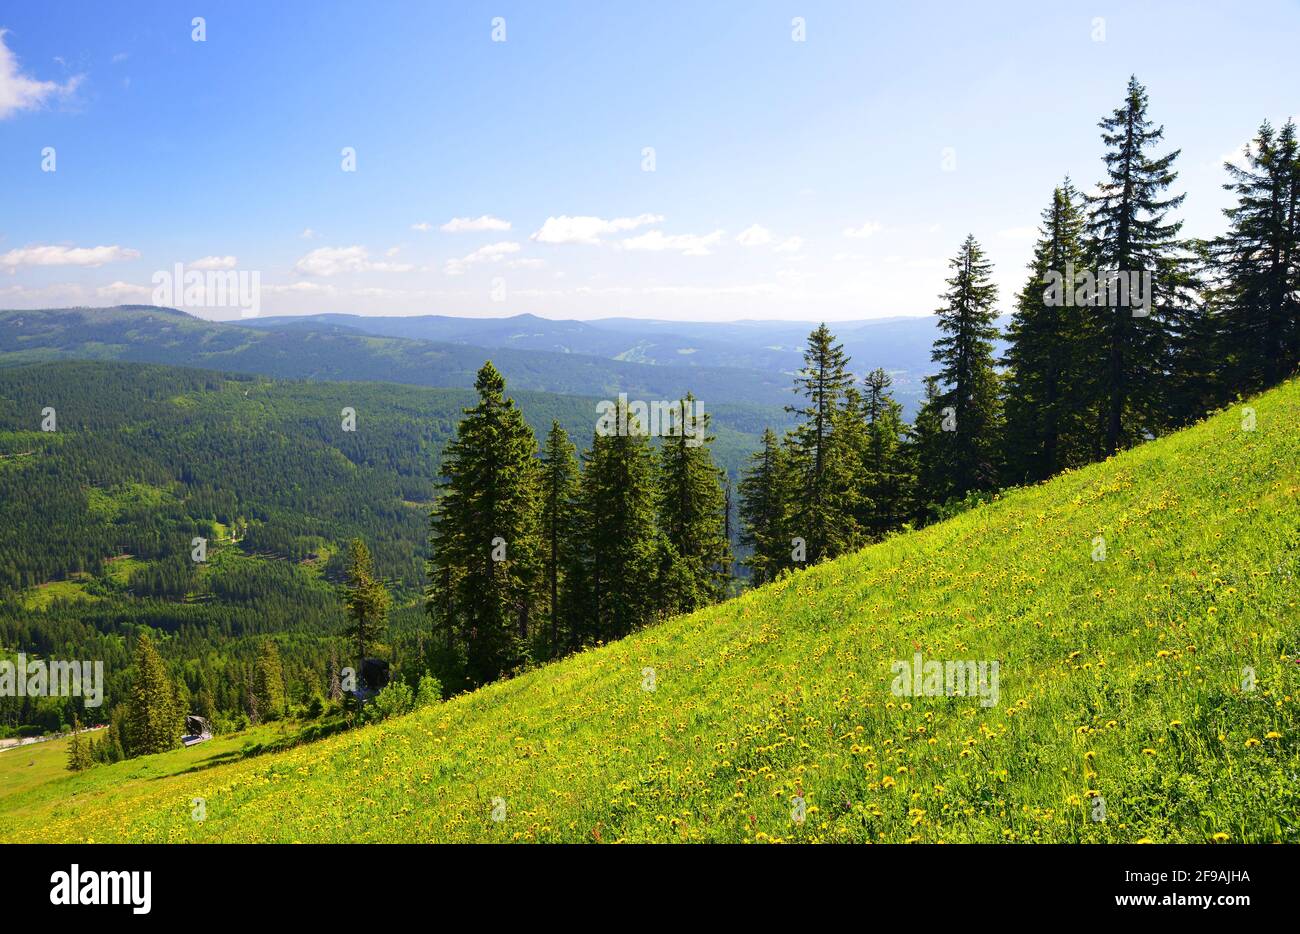 Paysage d'été dans le parc national Bayerische Wald, vue de la montagne Grosser Arber, Allemagne. Banque D'Images